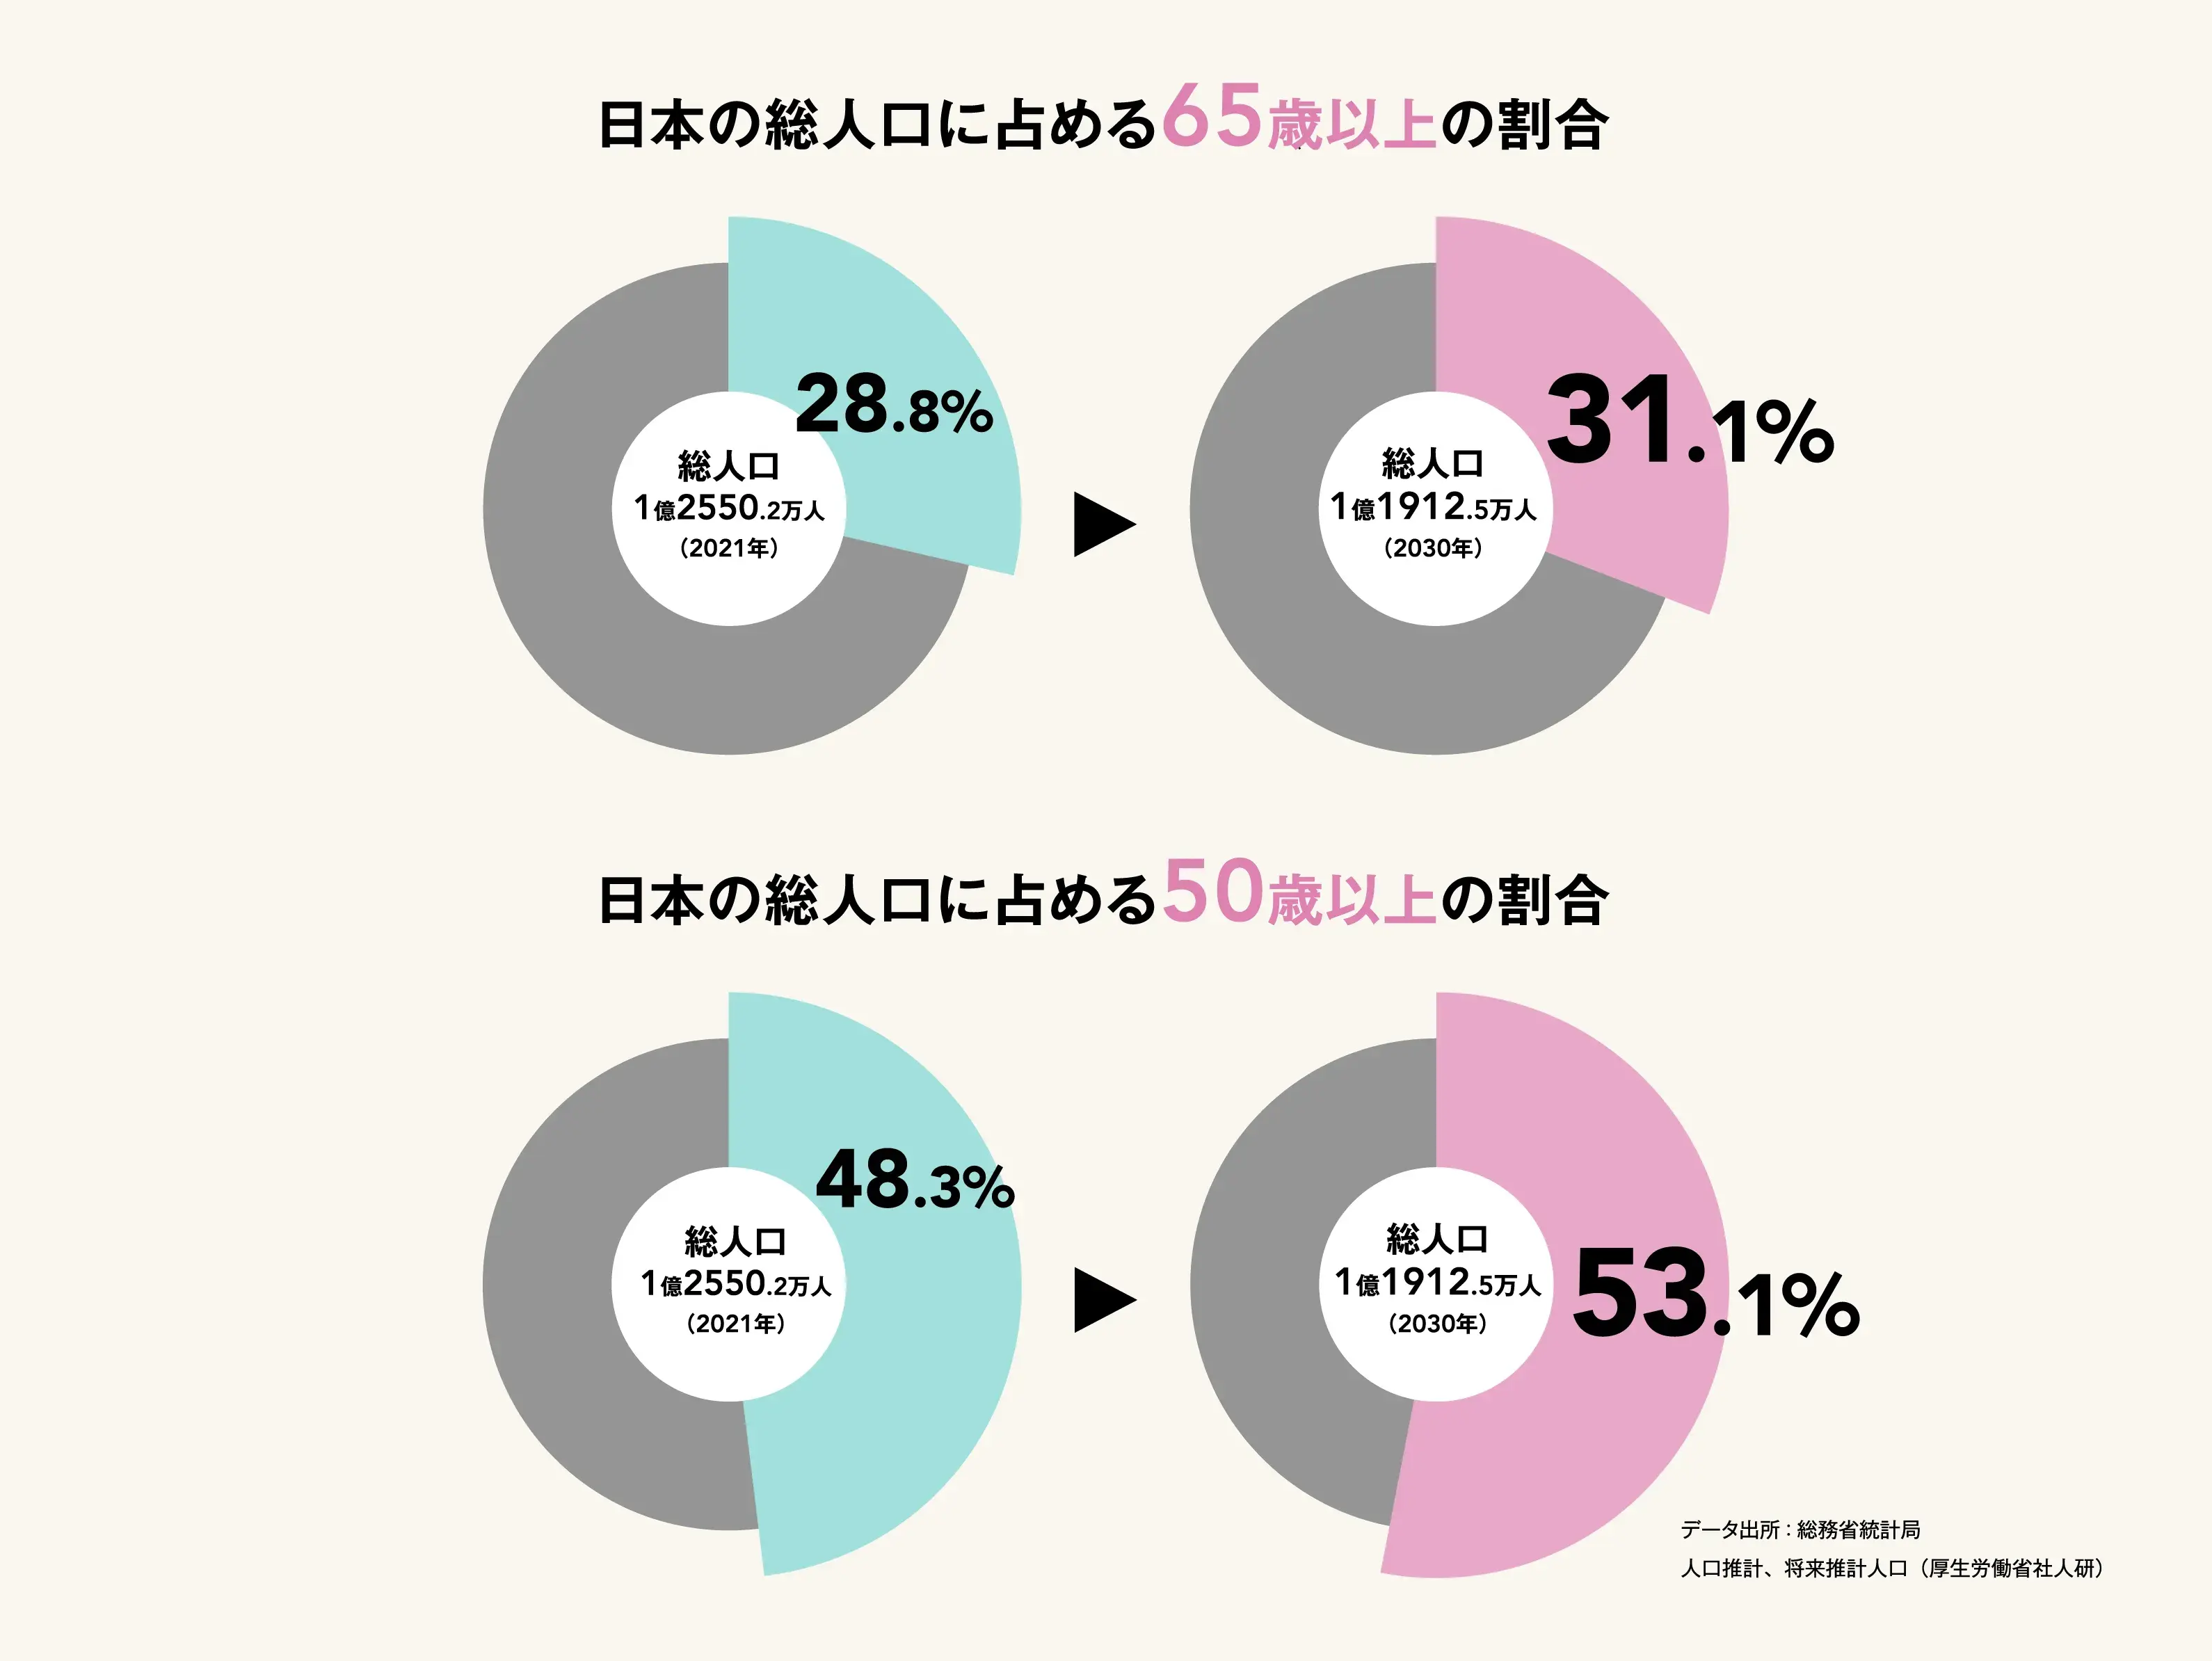 2021年と2030年の日本の総人口に占める50歳以上の割合